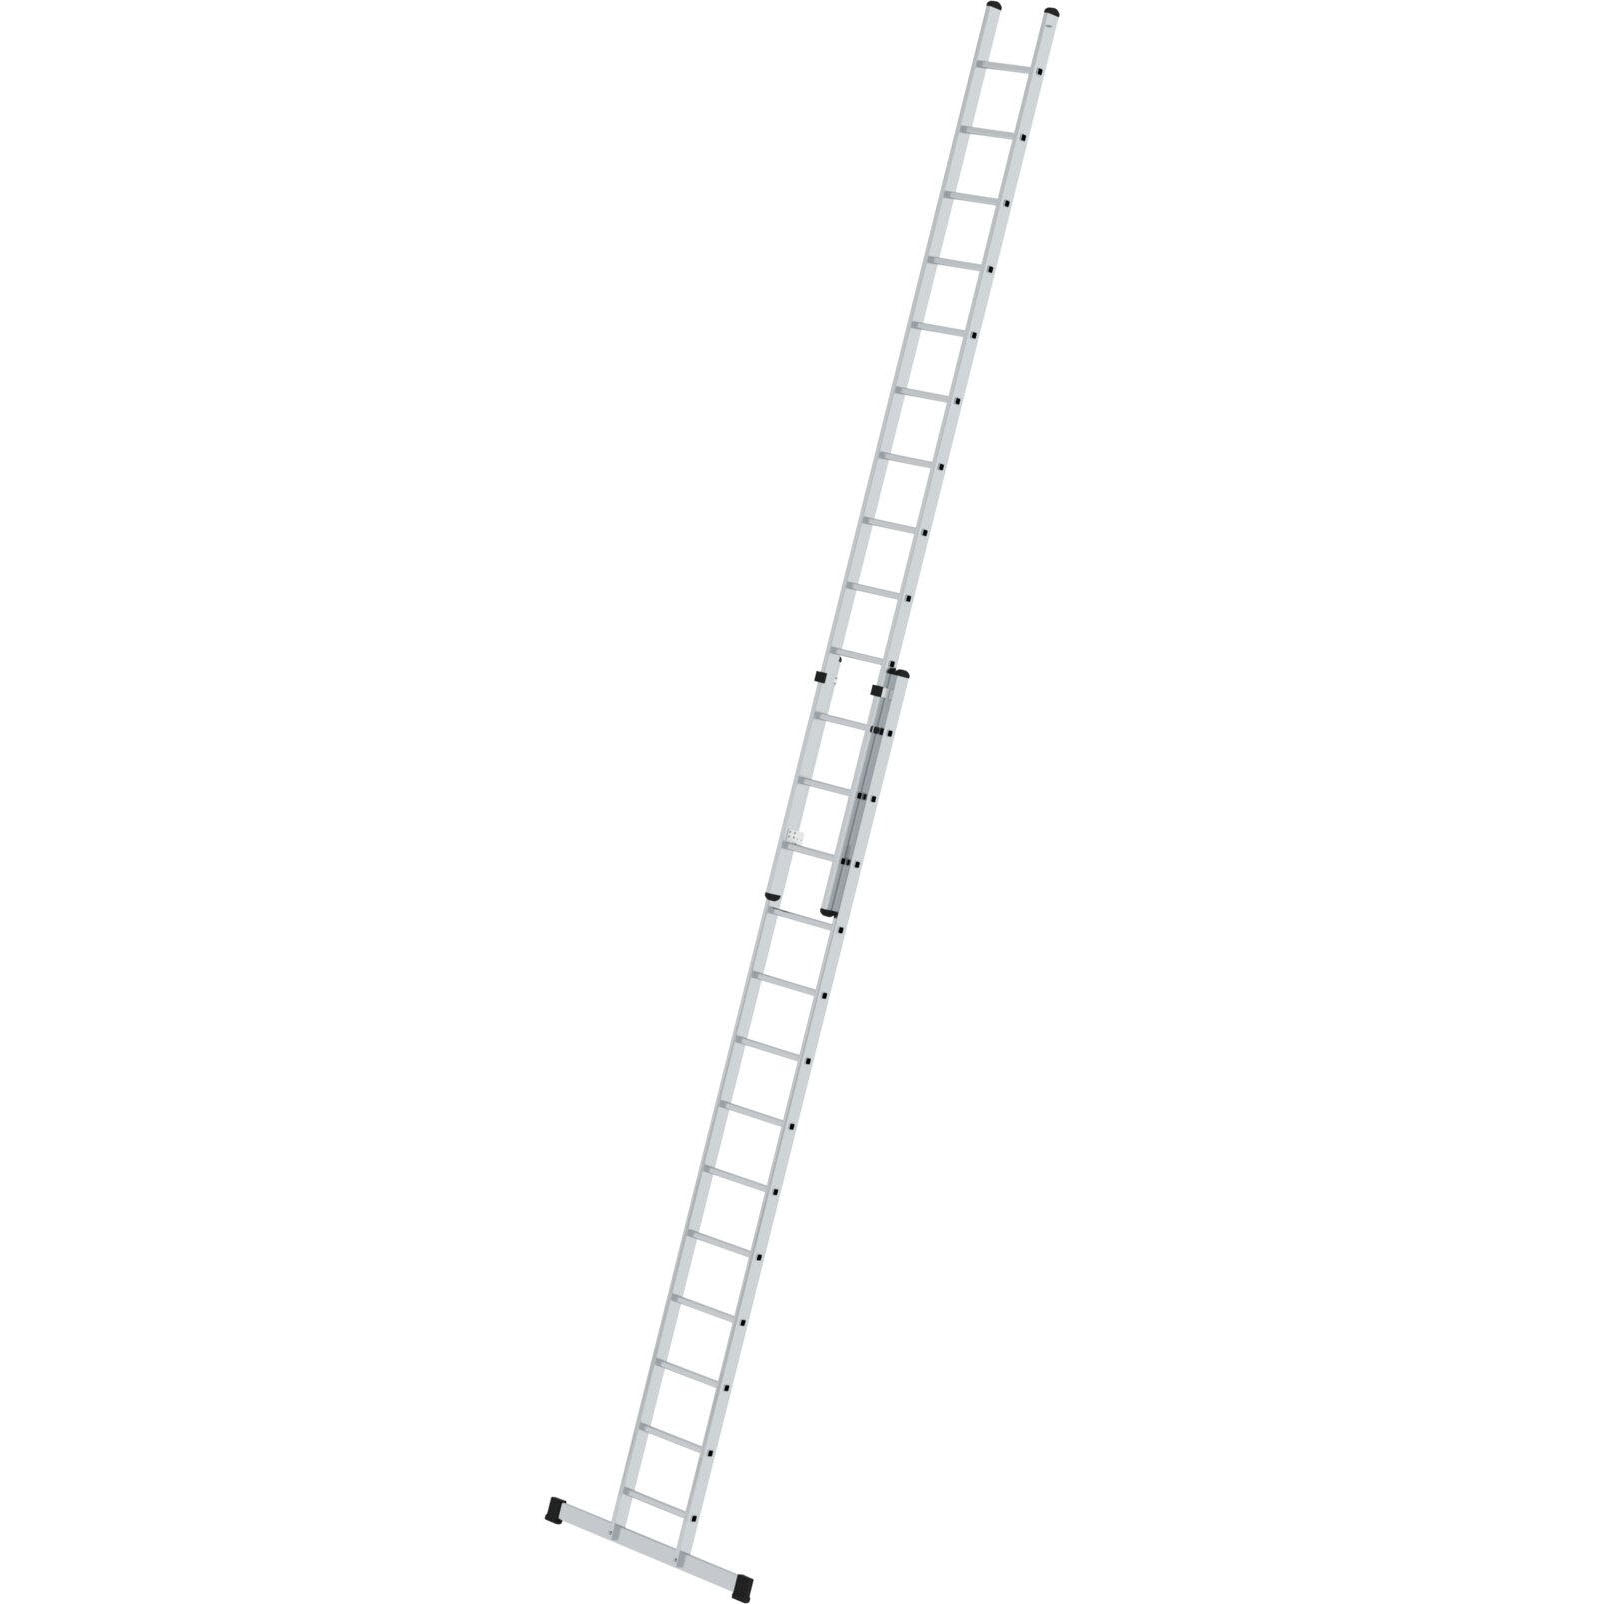 Двухсекционная алюминиевая лестница 2 x 13 со стабилизатором Munk Guenzburger Steigtechnik 11613